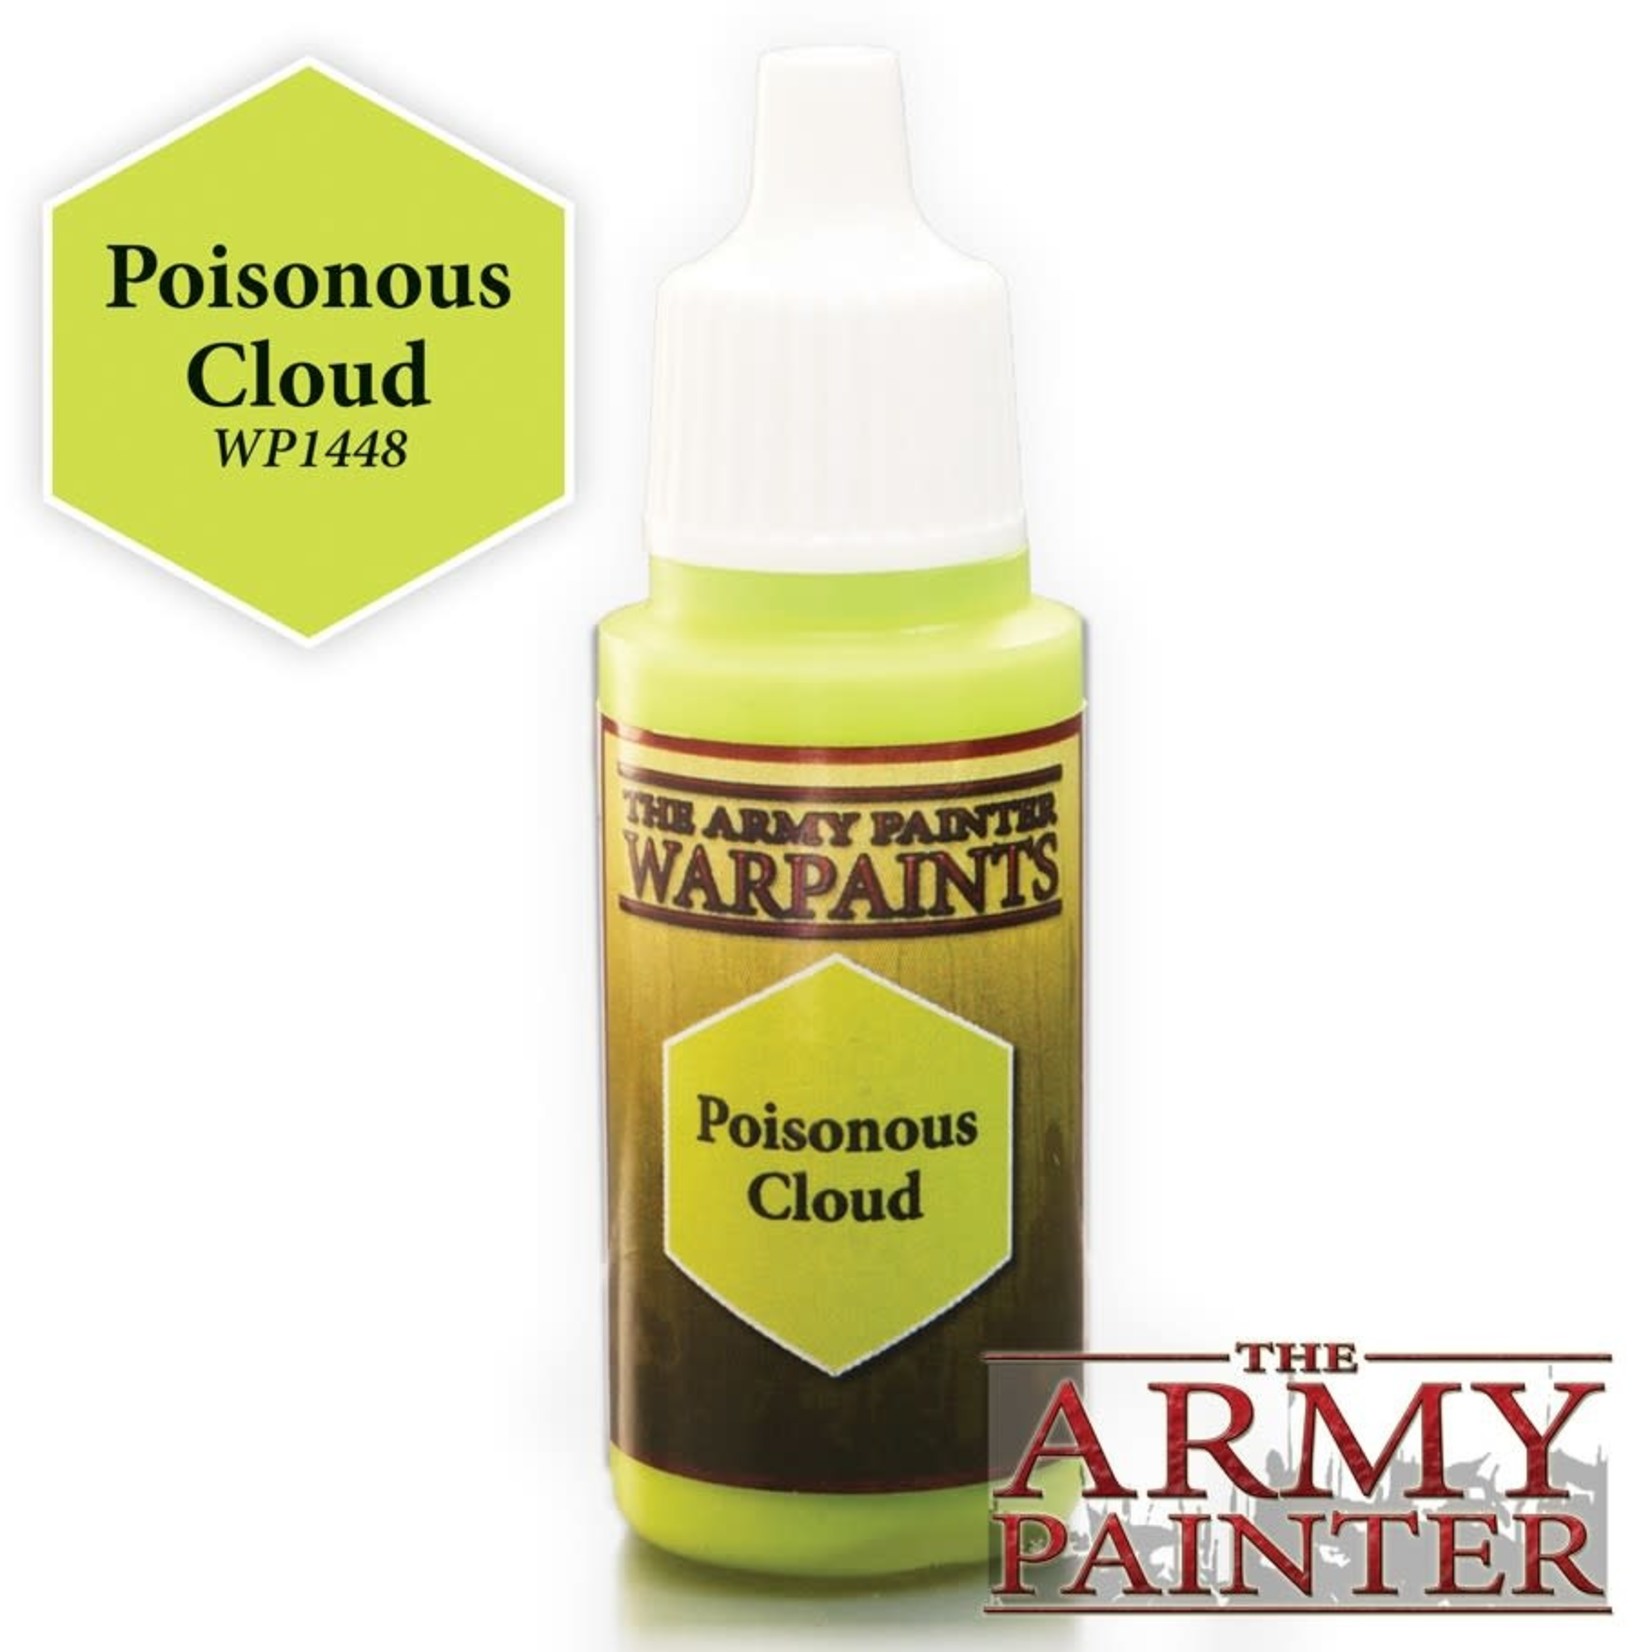 The Army Painter Warpaints: Poisonous Cloud